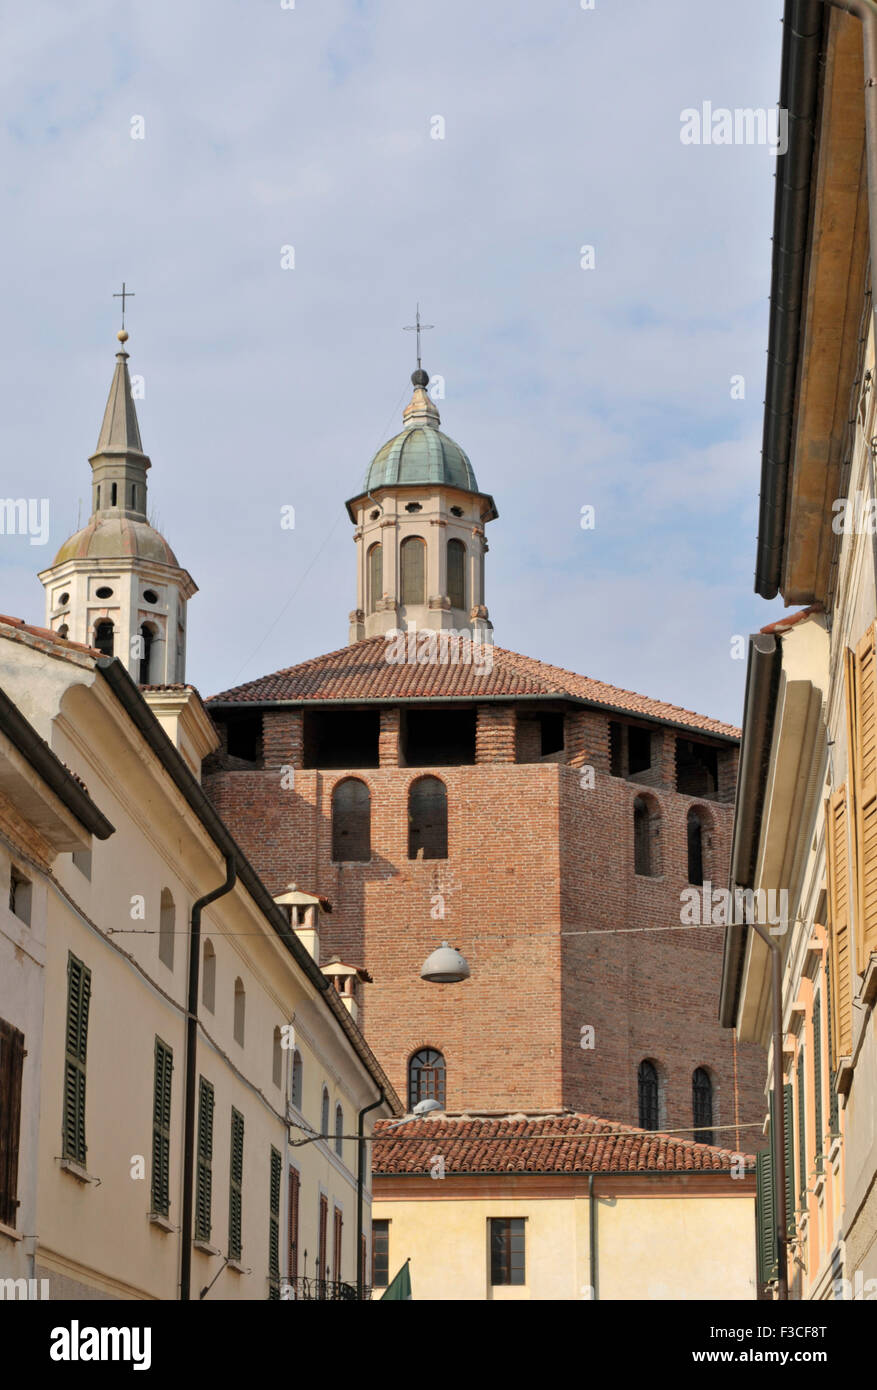 Houses and Beata Vergine Incoronata church, Sabbioneta, Mantua province, Lombardy region, Italy Stock Photo